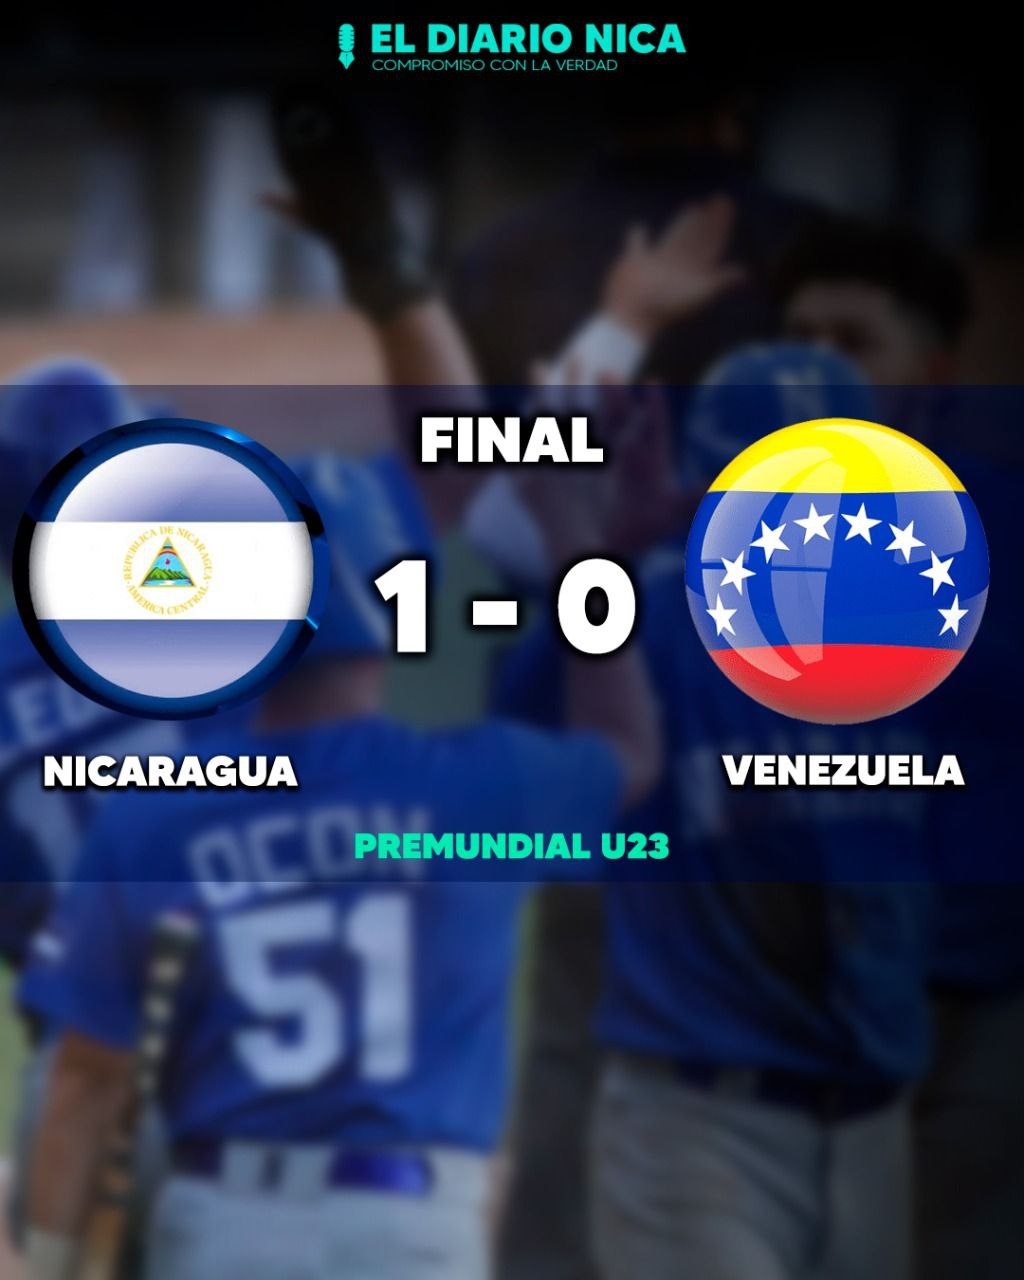 Nicaragua clasifica al mundial U23